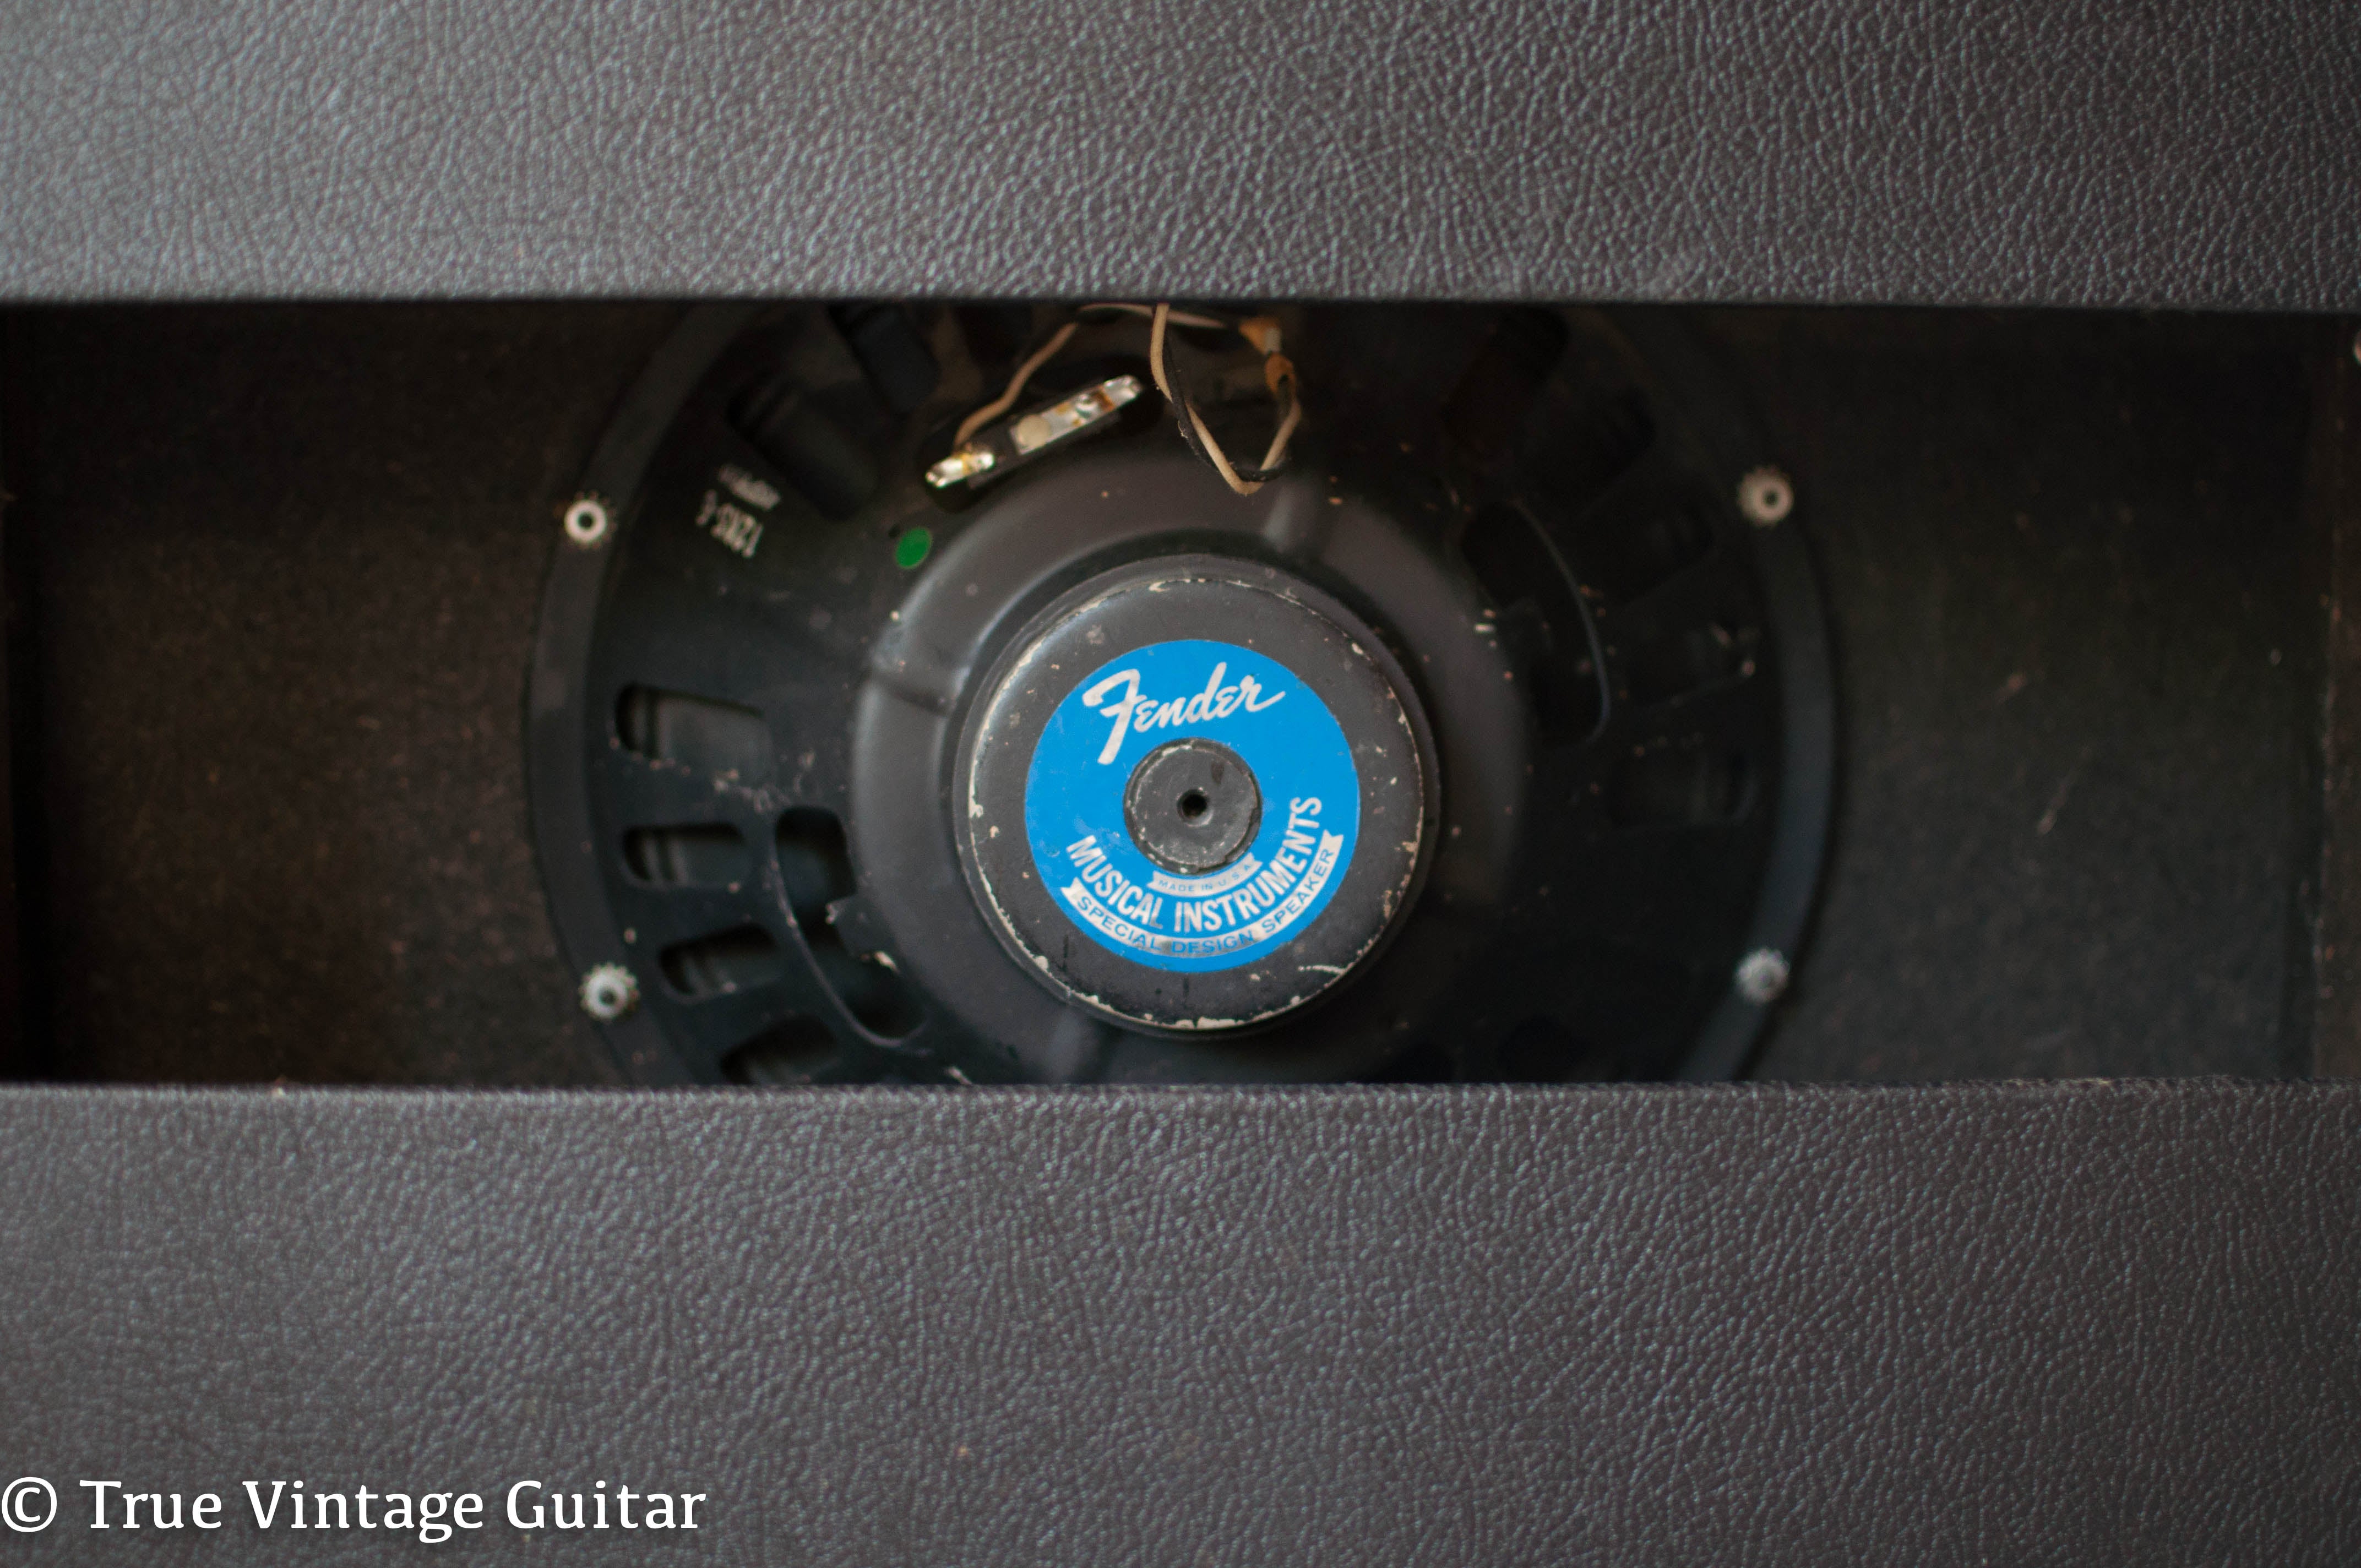 Blue label Oxford 12" speaker 1967 Fender Deluxe Reverb amp